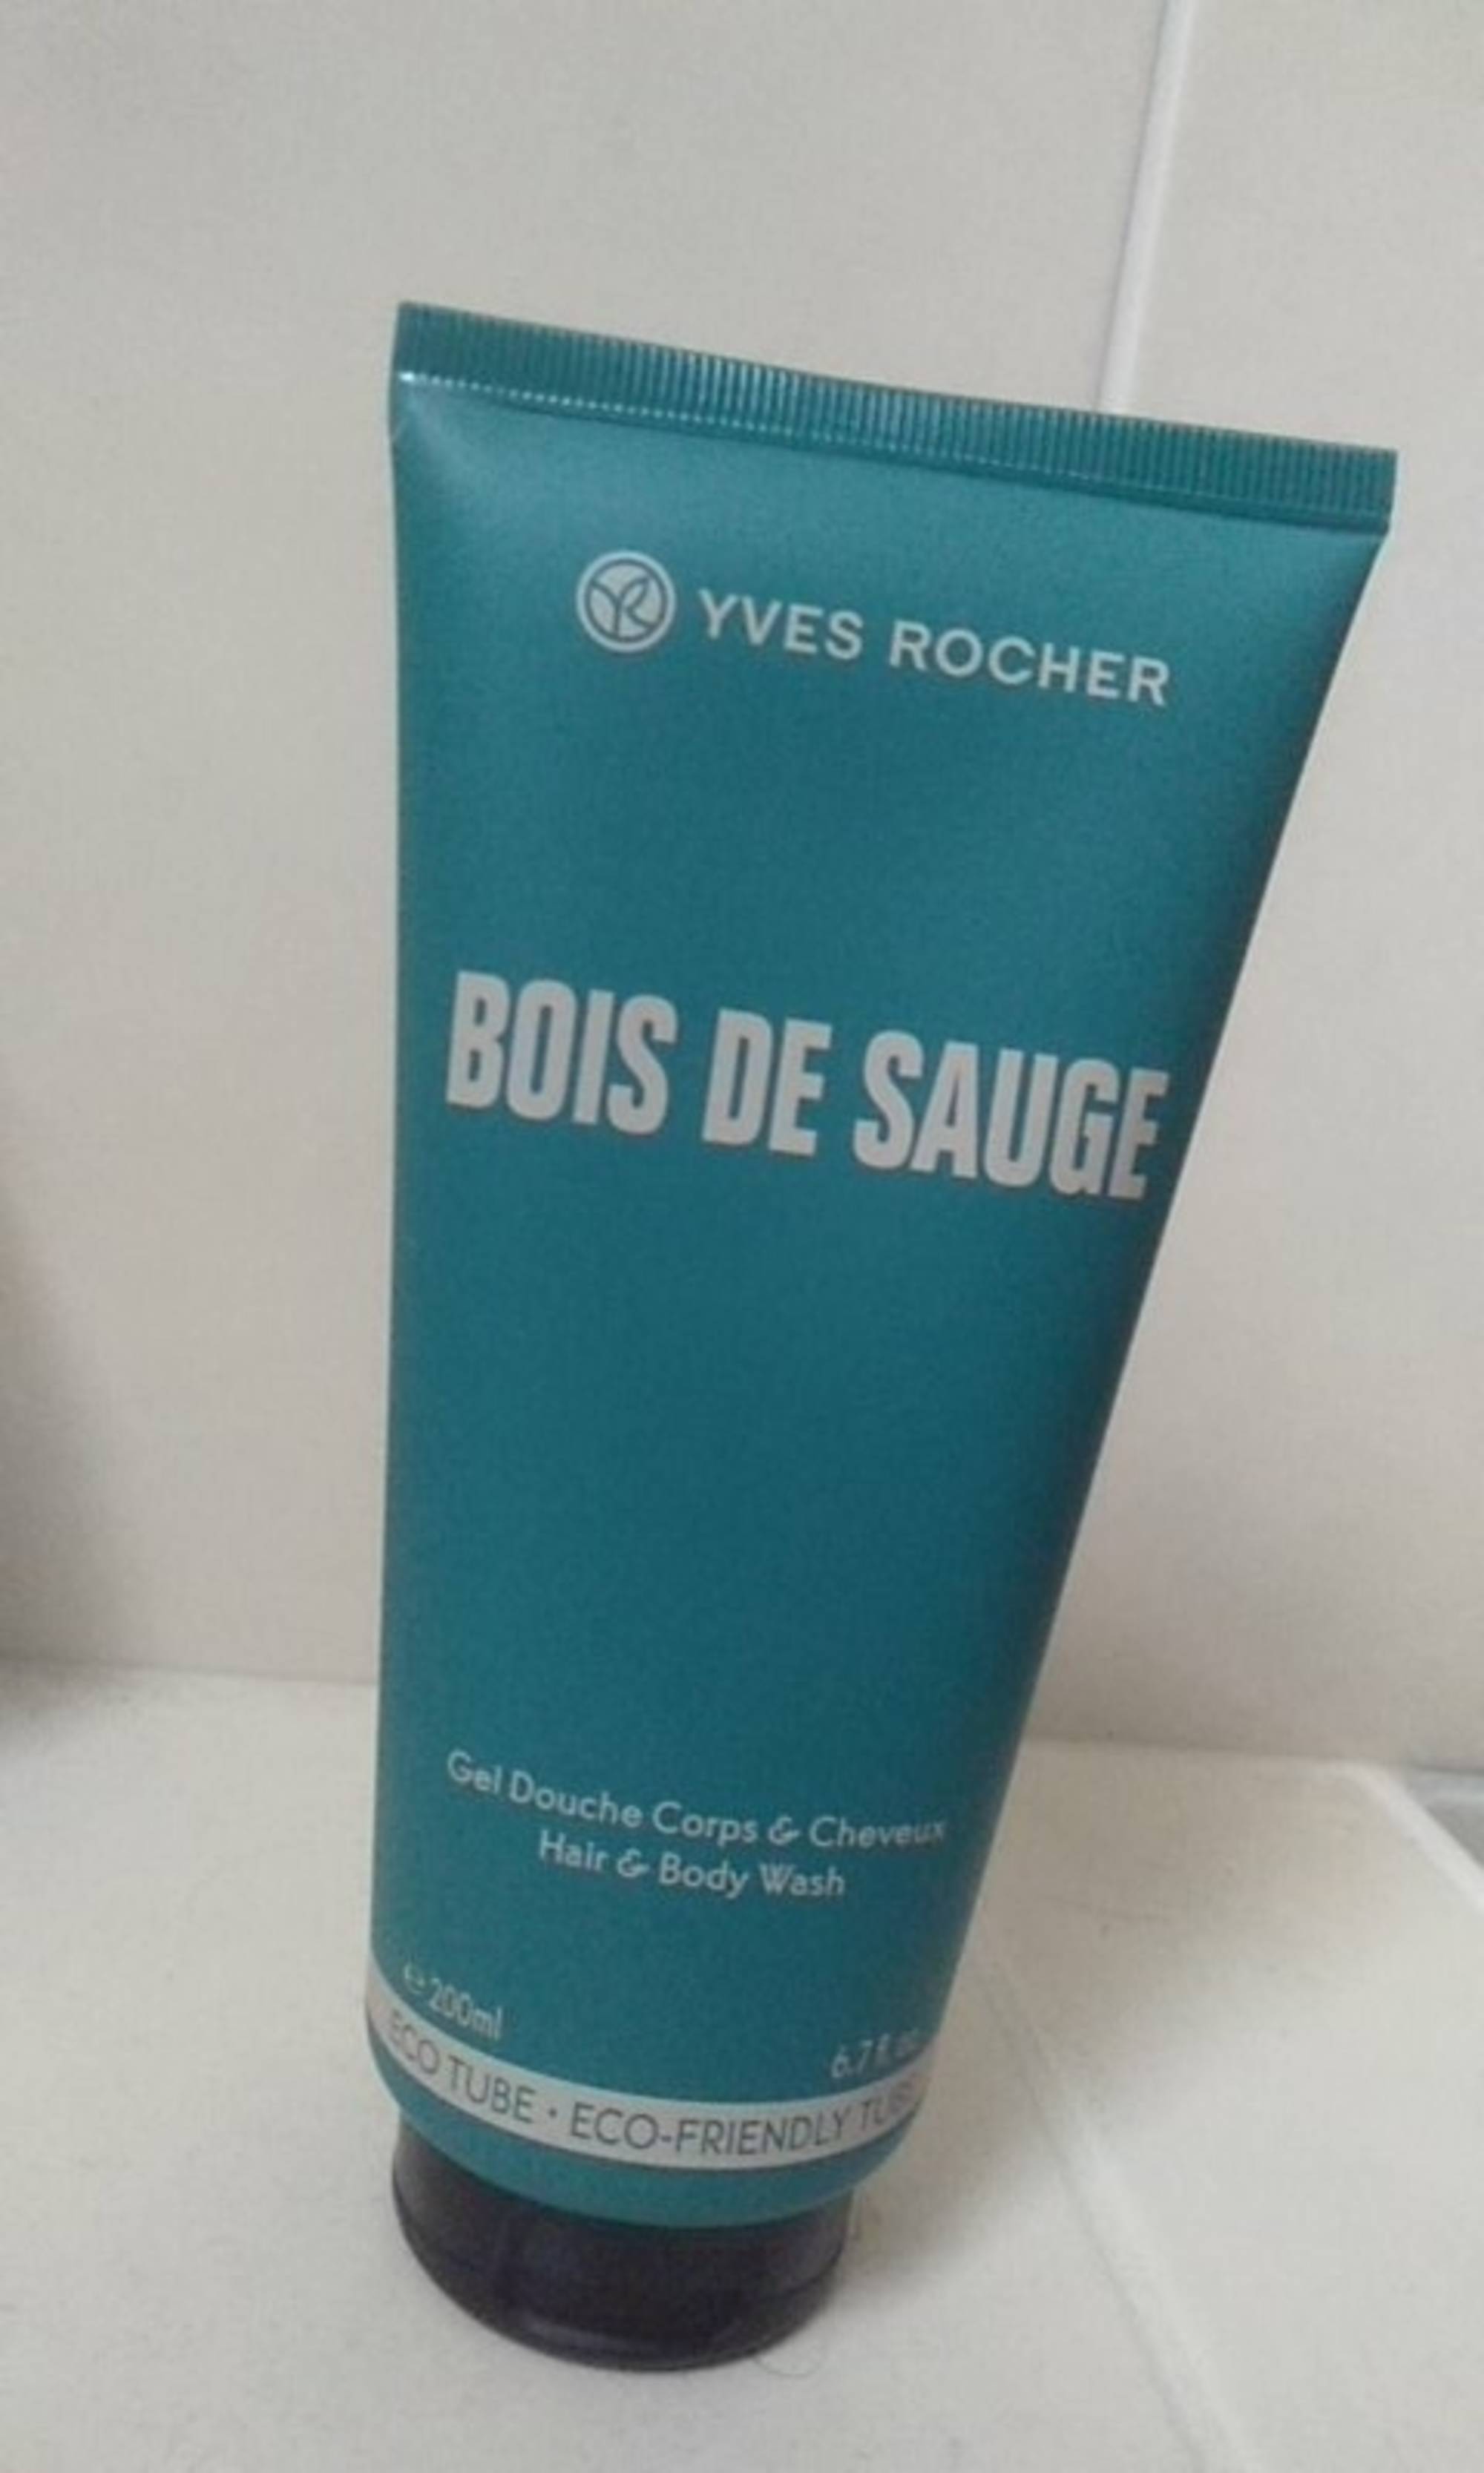 YVES ROCHER - Bois de sauge - Gel douche corps & cheveux